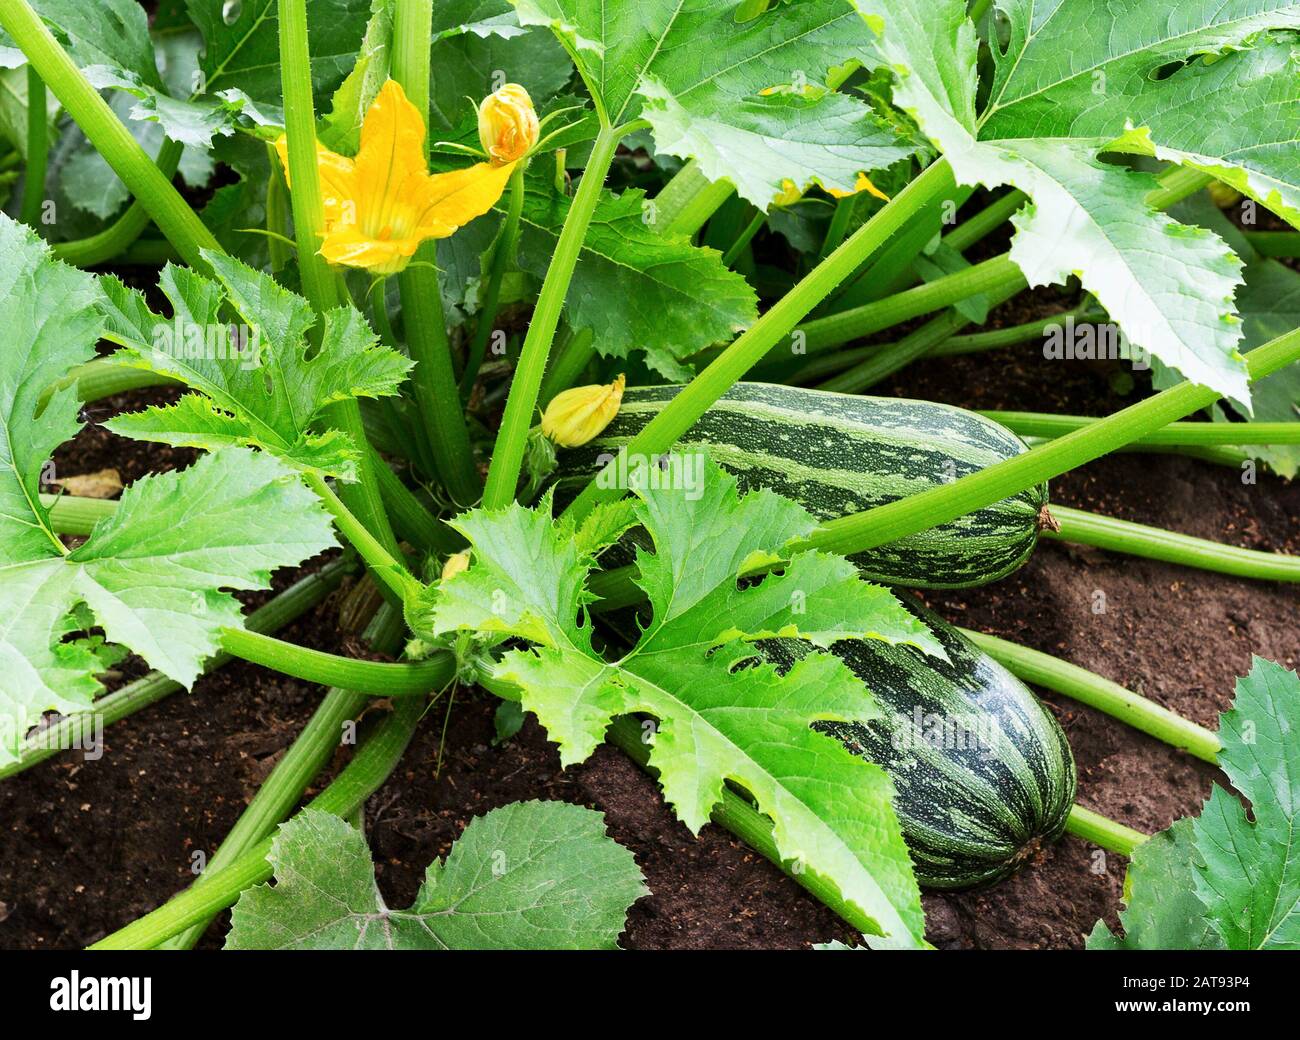 Impianto di zucchine. Zucchine con fiori e frutta in campo. Midollo vegetale verde che cresce su Bush. Zucchine fiorisce. Foto Stock